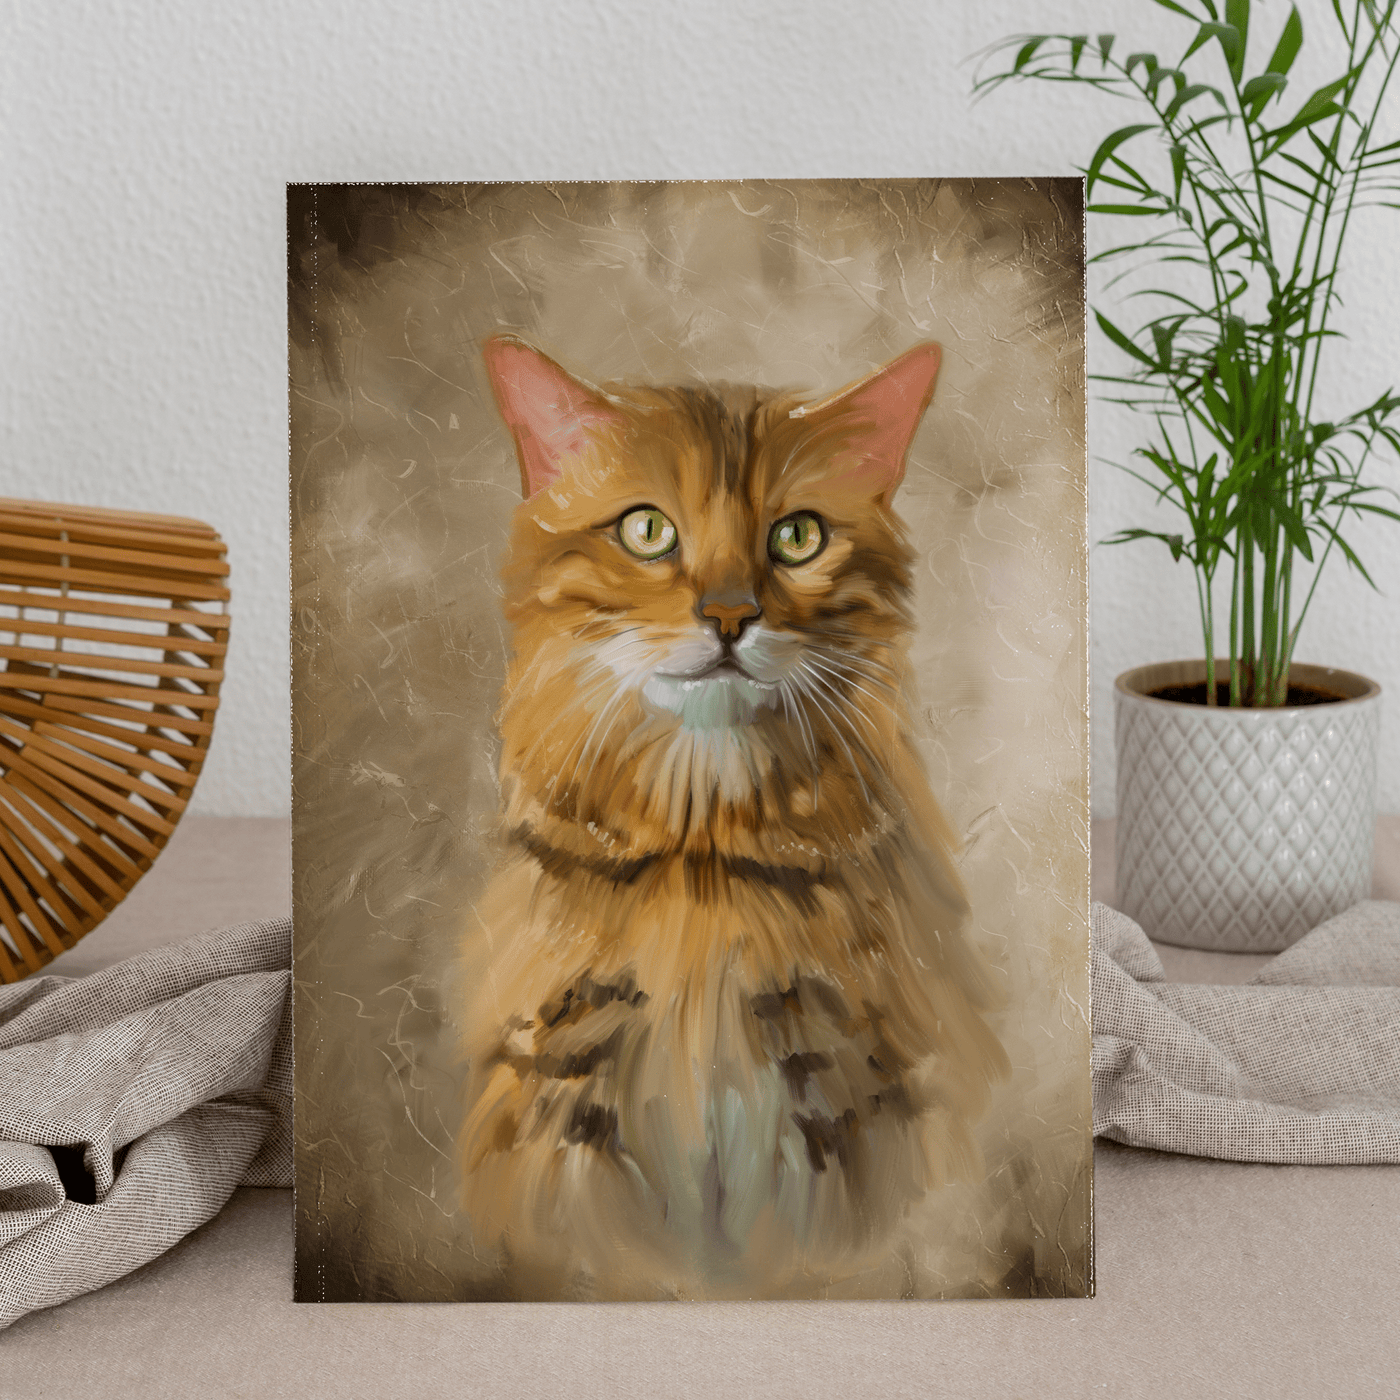 pastel pet portraits of an adorable cat